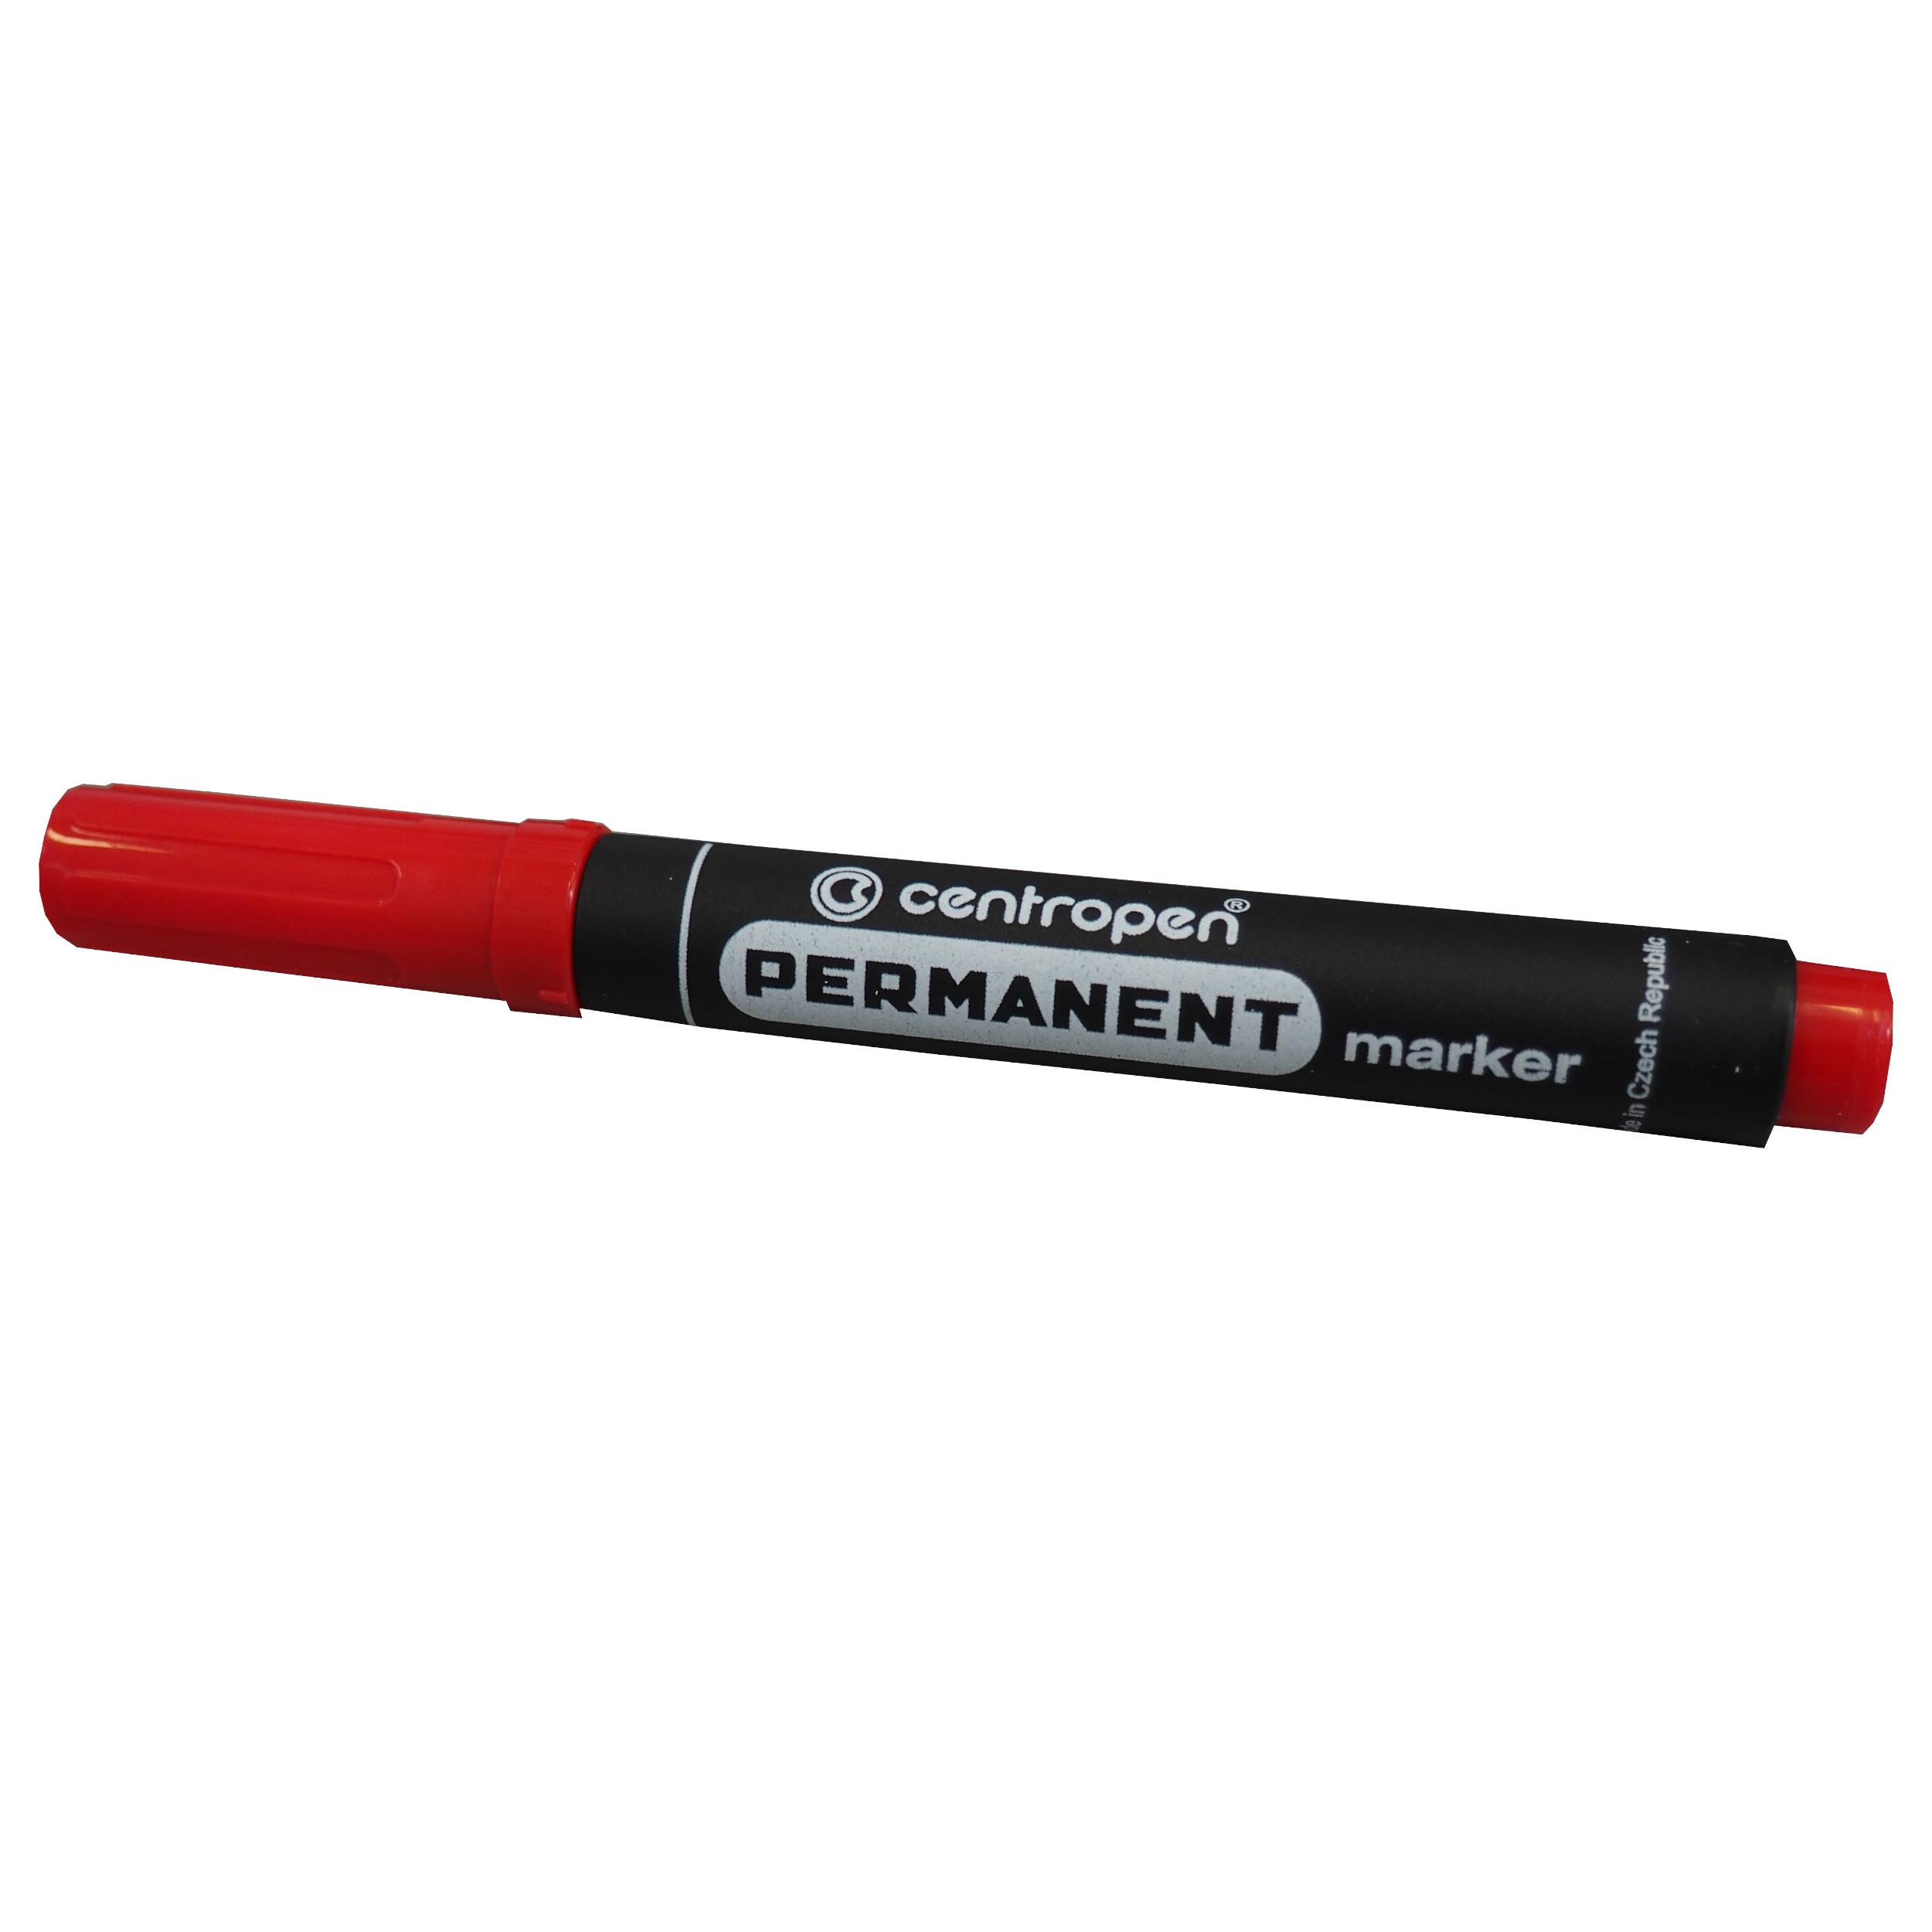 CENTROPEN značkovač permanentní, 8566/1, červený, stopa 2,5mm, sada 10 ks 0.17 Kg TOP Sklad4 800710 97